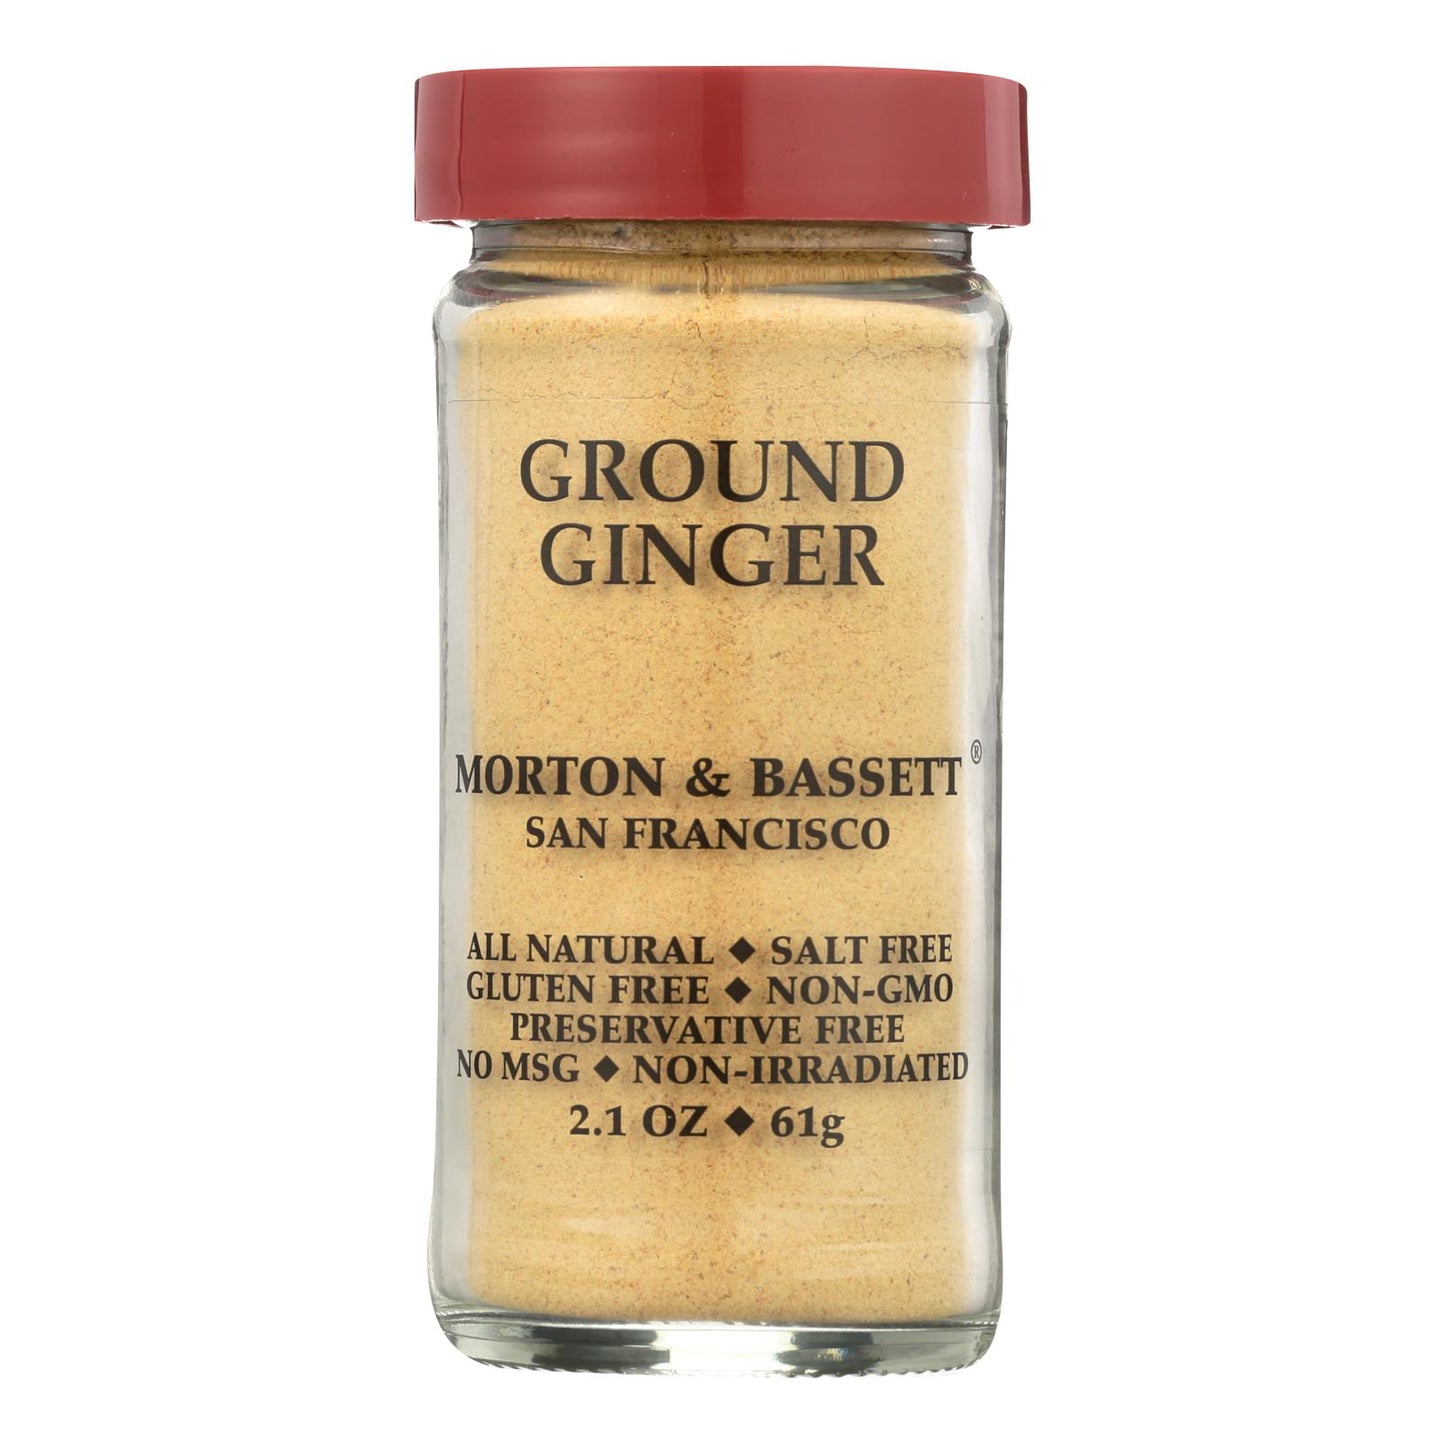 Morton And Bassett Ginger - Ground - 2.1 Oz - Case Of 3